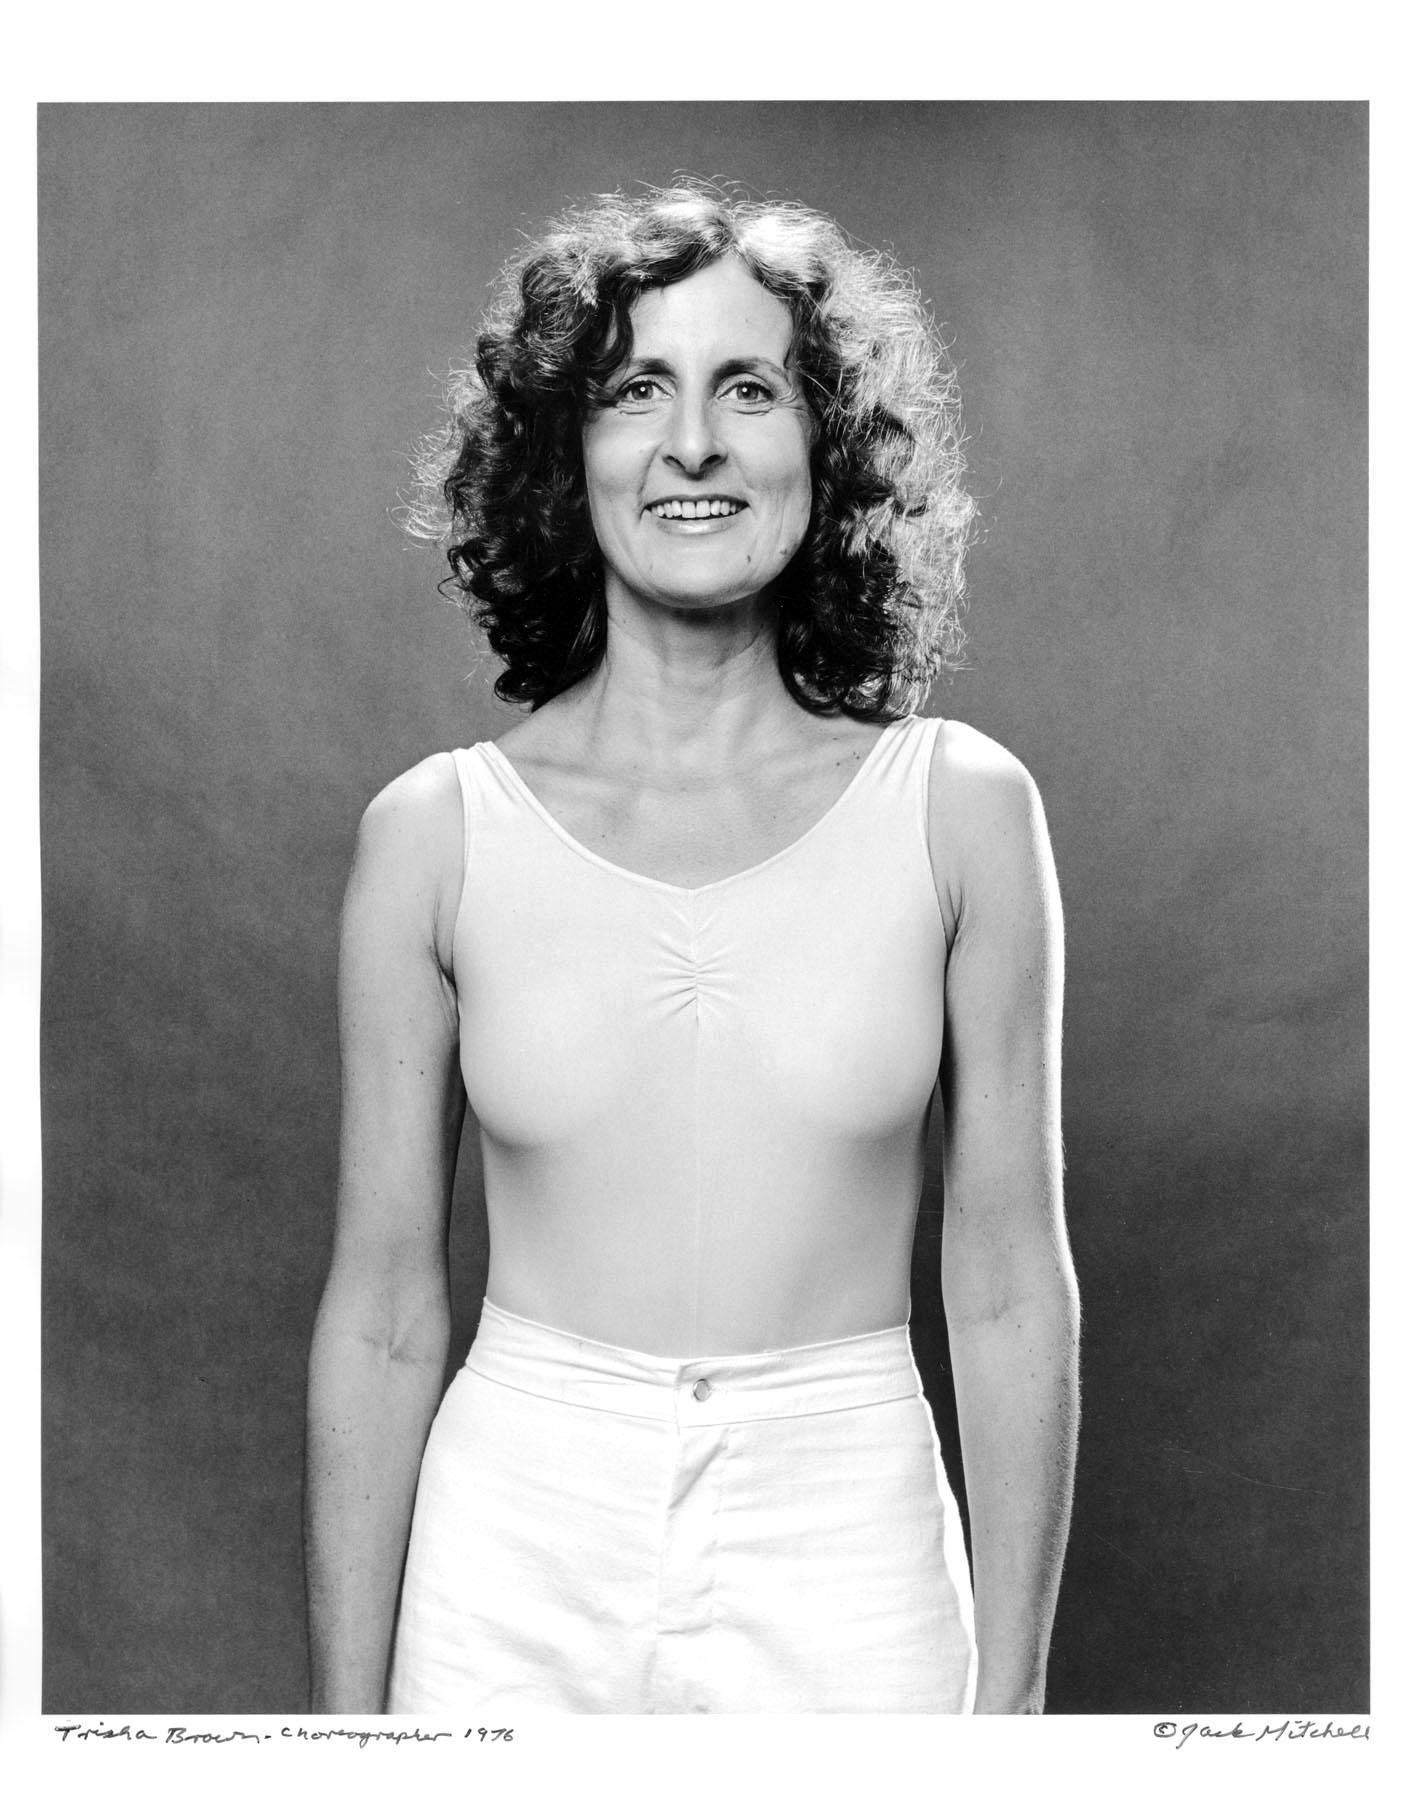 11 x 14" alte Silbergelatinefotografie der Tänzerin/Choreografin Trisha Brown aus dem Jahr 1976, signiert von Jack Mitchell auf der Vorderseite des Abzugs. Kommt direkt aus dem Jack Mitchell Archiv mit einem Echtheitszertifikat. 

Jack Mitchells